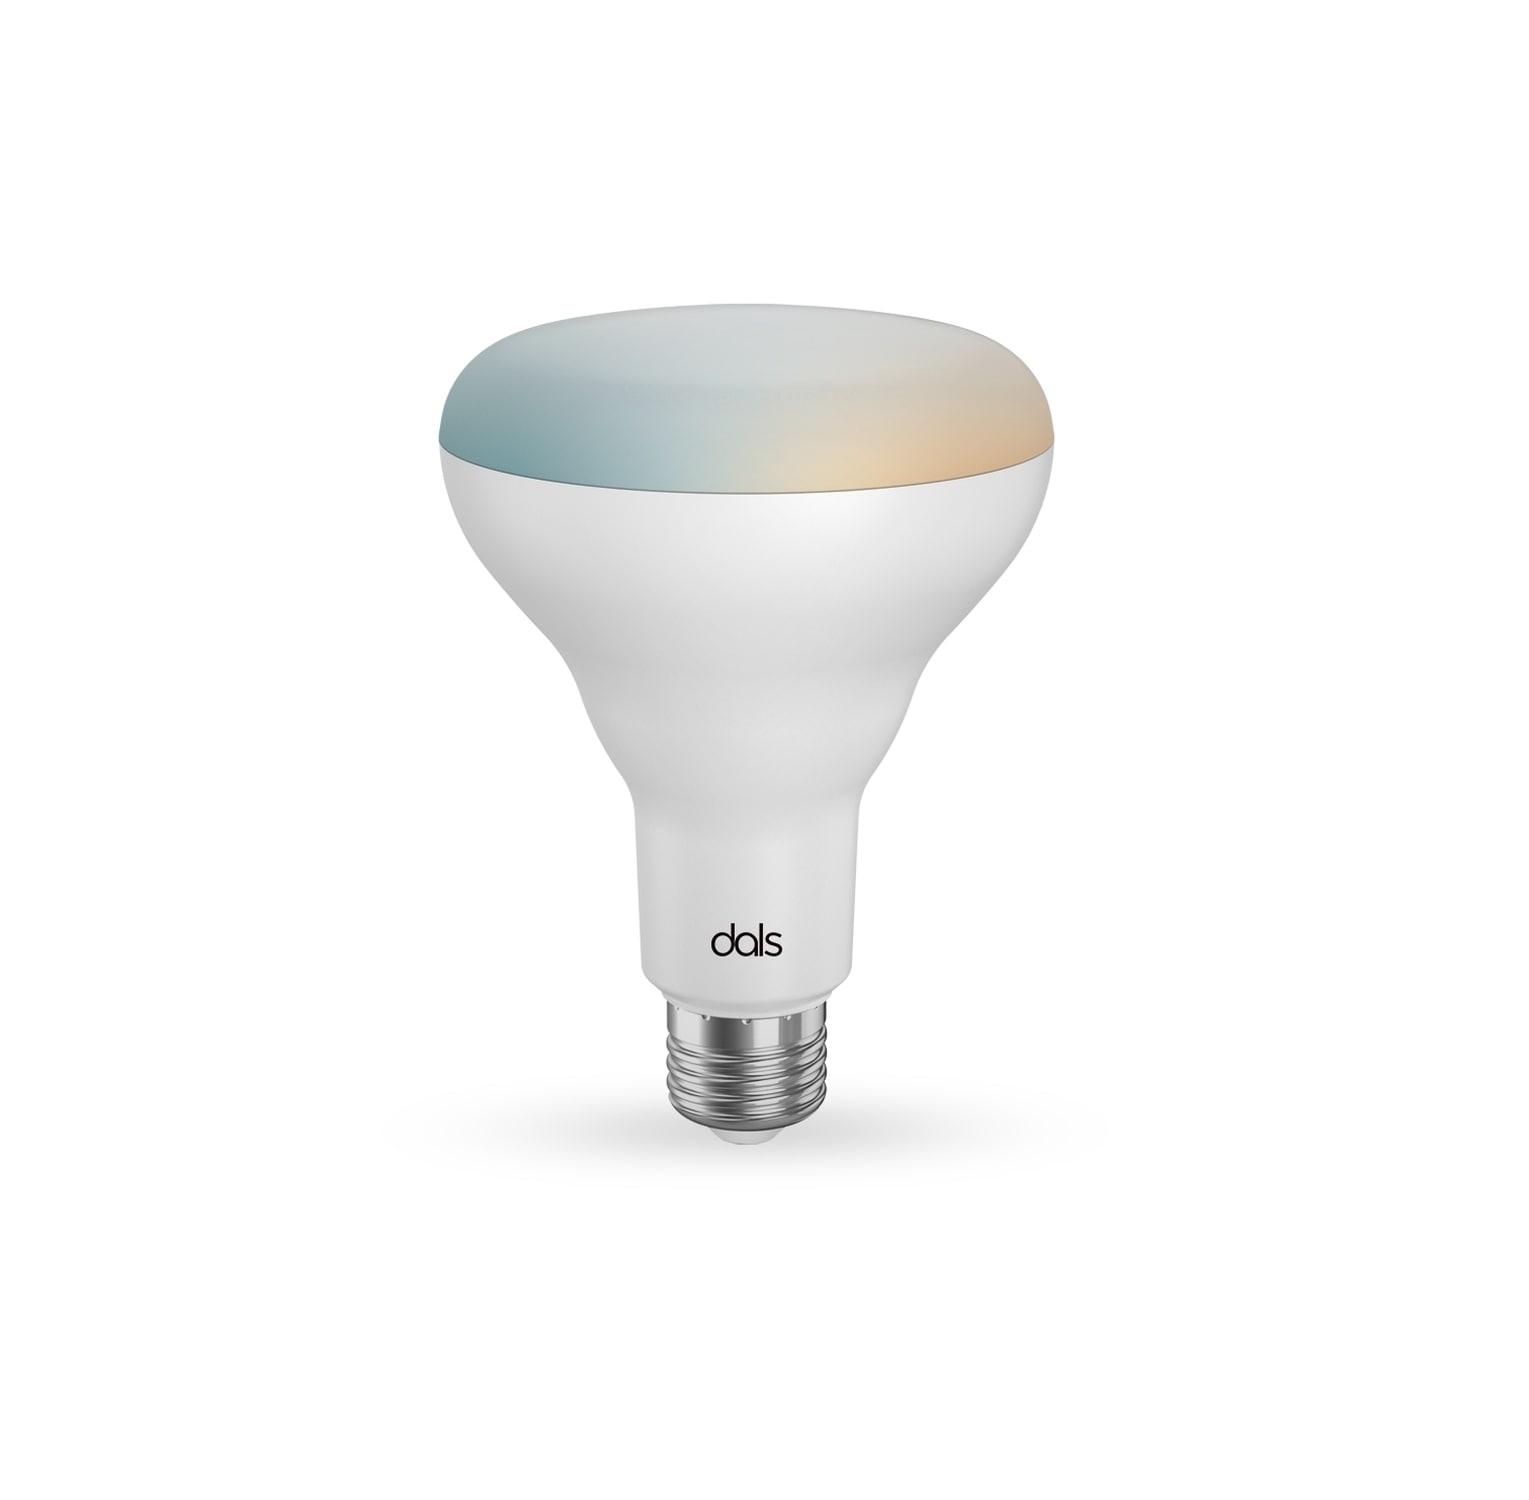 Connect Pro 60-Watt EQ BR30 Full Spectrum Medium Base (e-26) Dimmable Smart LED Light Bulb | - DALS Lighting DCP-BLBBR30